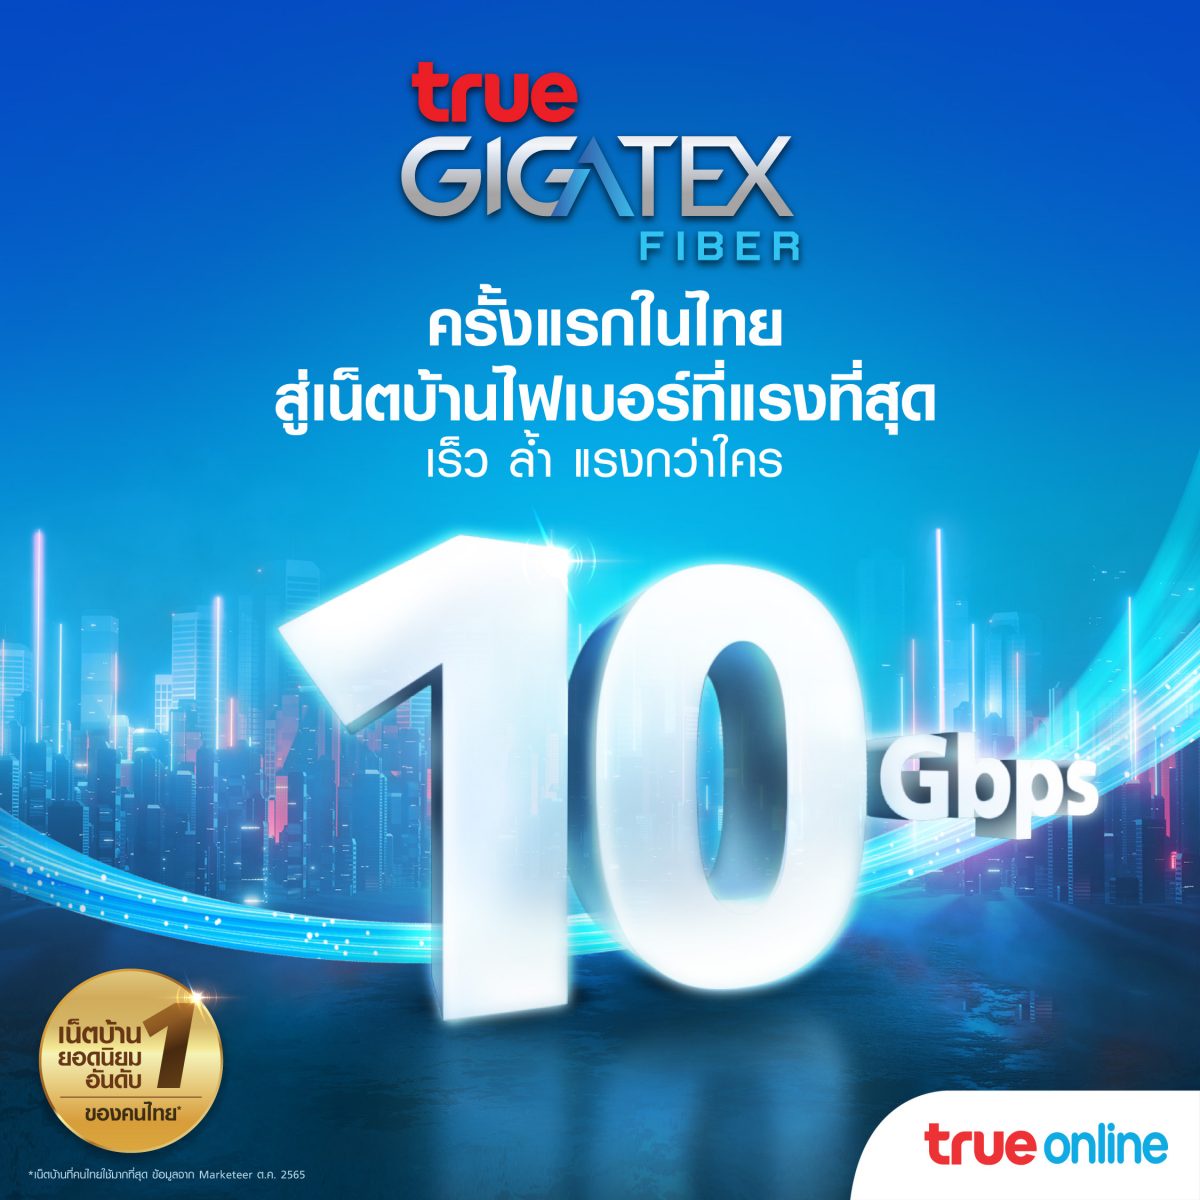 ทรูออนไลน์ สร้างปรากฏการณ์ใหม่เน็ตบ้านไฟเบอร์แรงสุด.10 Gbps ครั้งแรก ในไทย ! นำร่องร่วมกับ แมกโนเลียส์ ราชดำริ บูเลอวาร์ด ส่งแพ็กเกจ True Gigatex Premium 10 Gbps.